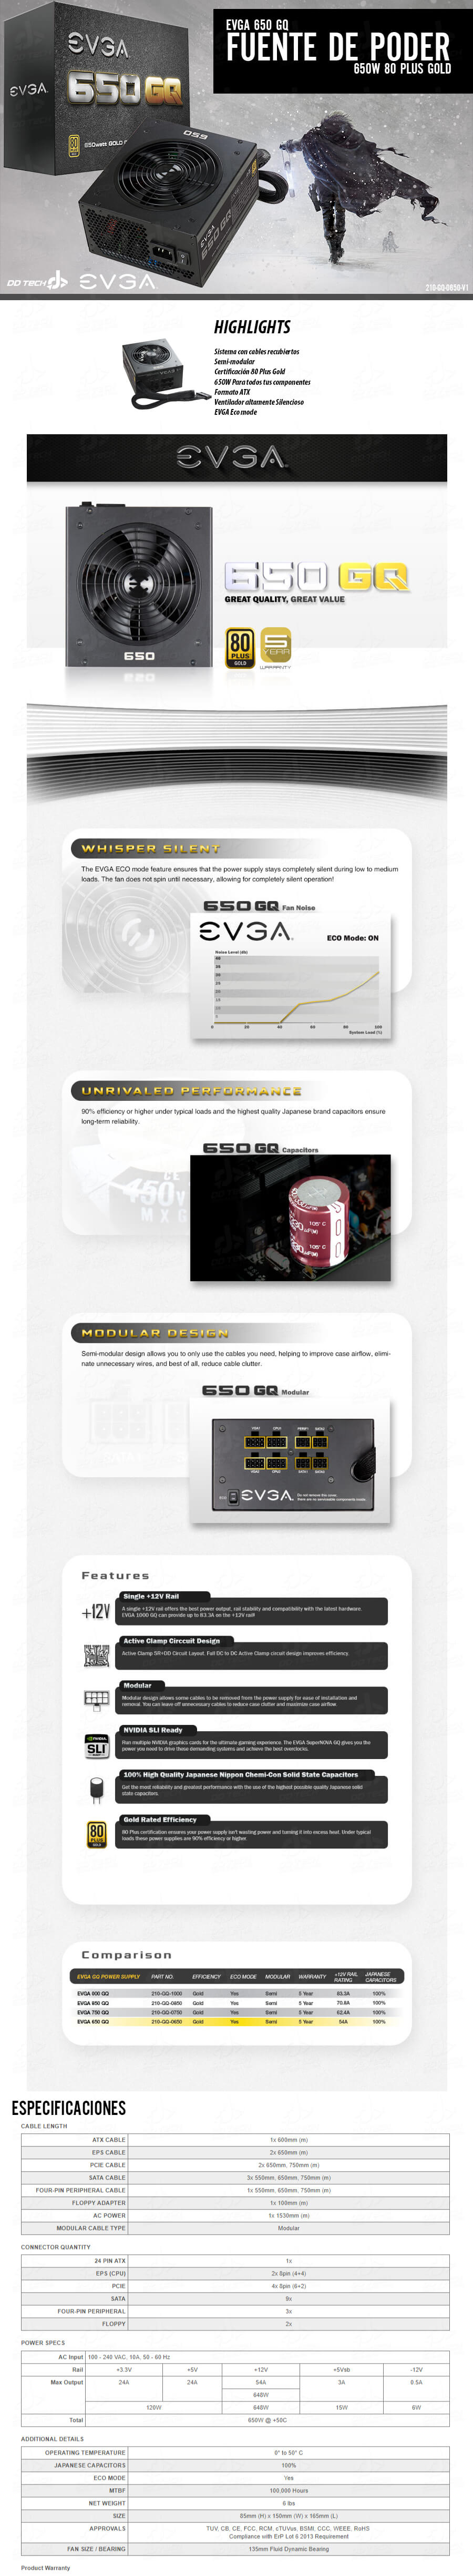 EVGA GQ 850W 80 Plus Gold Modular - Comprar fuente de alimentación